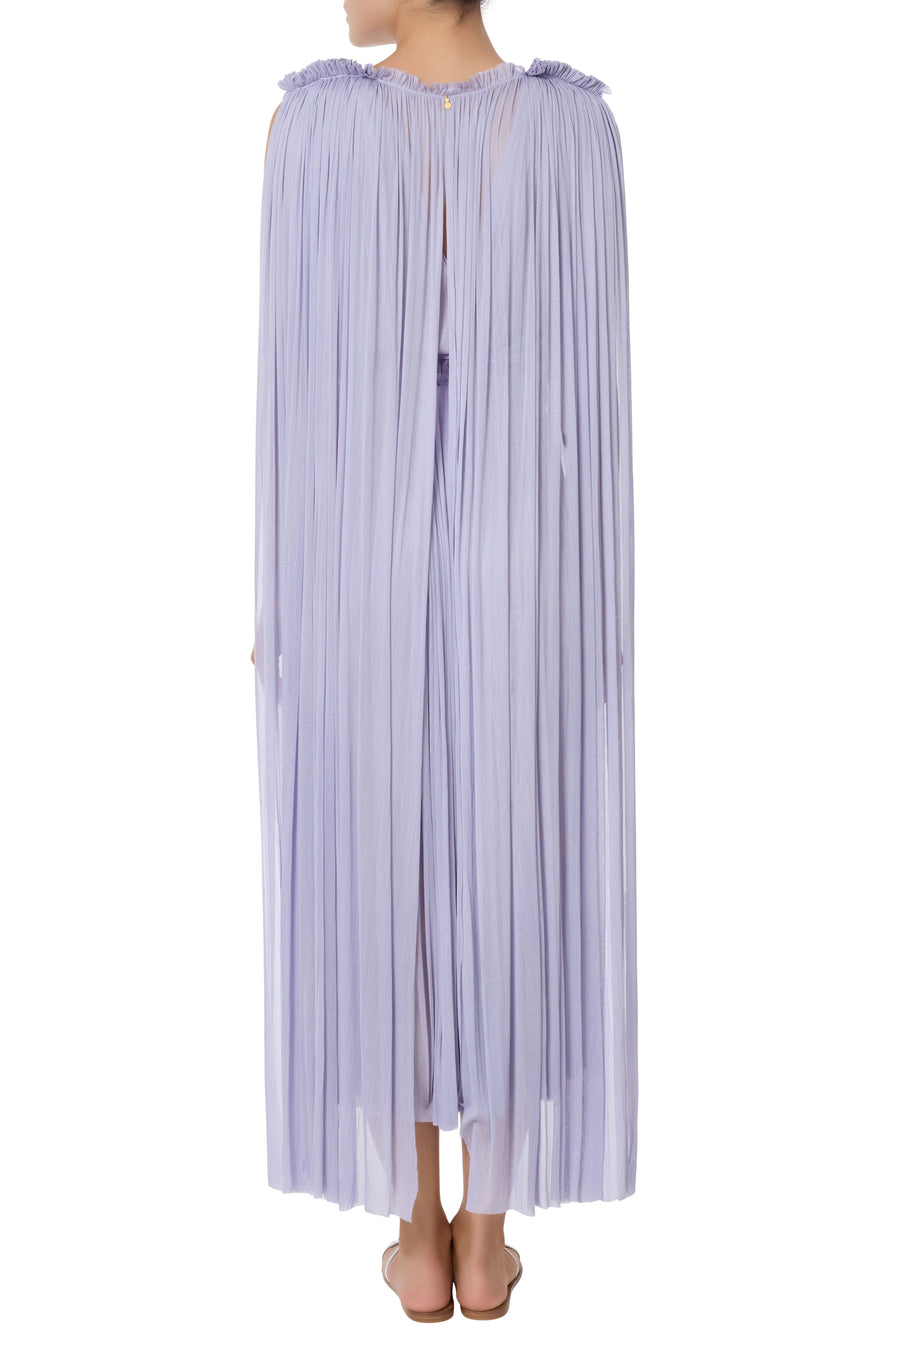 Cymone lilac dress